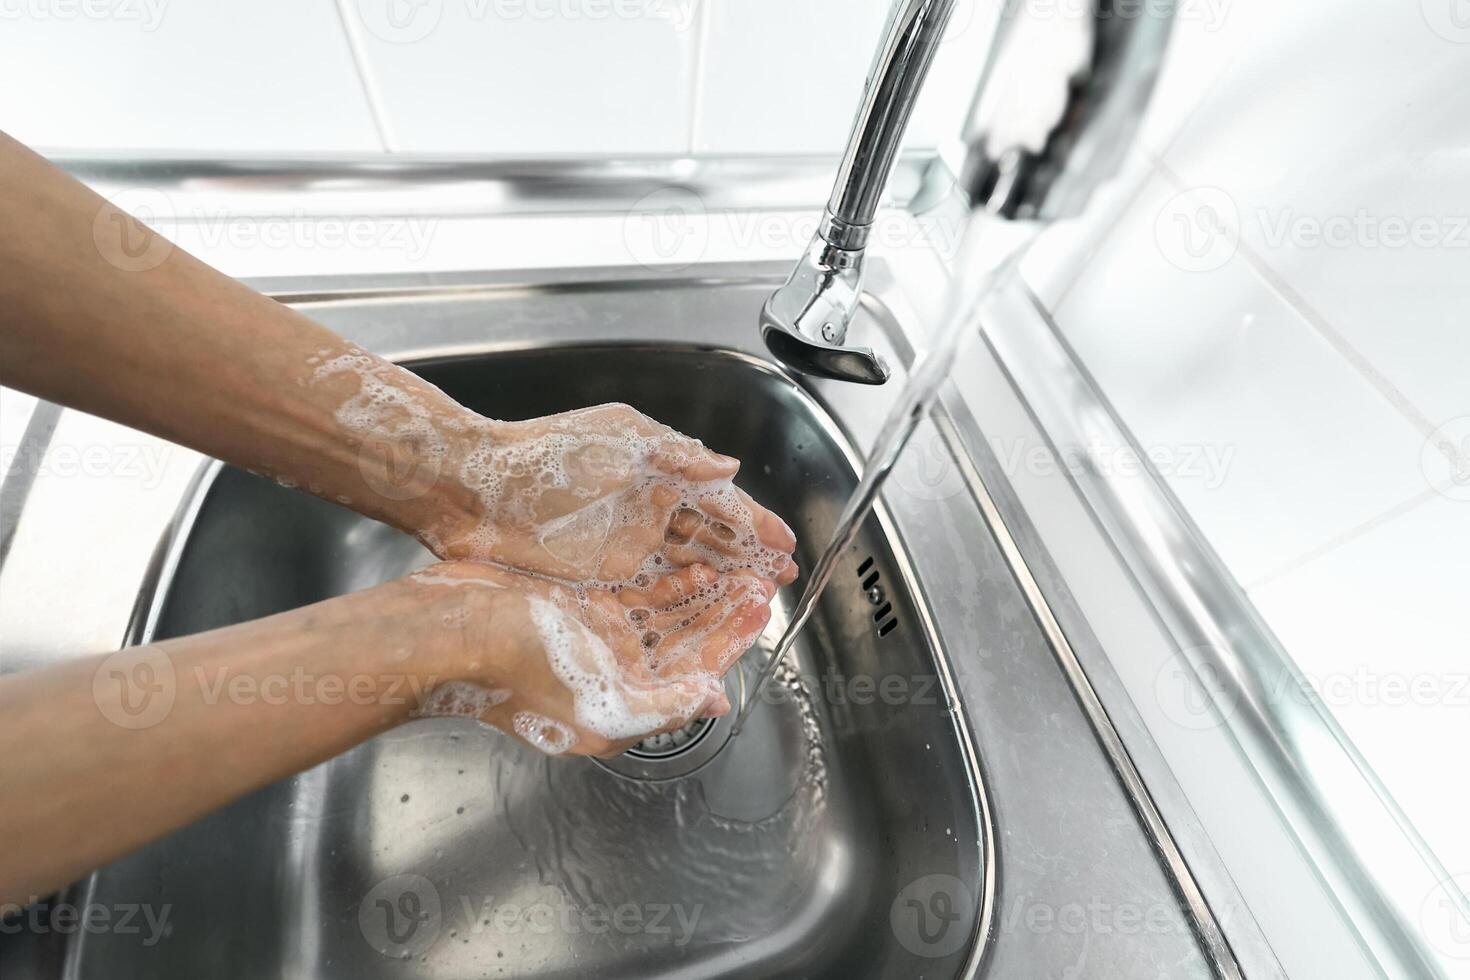 femelle la lessive mains avec liquide savon pour empêcher et Arrêtez couronne virus diffuser. hygiène et soins de santé gens concept photo